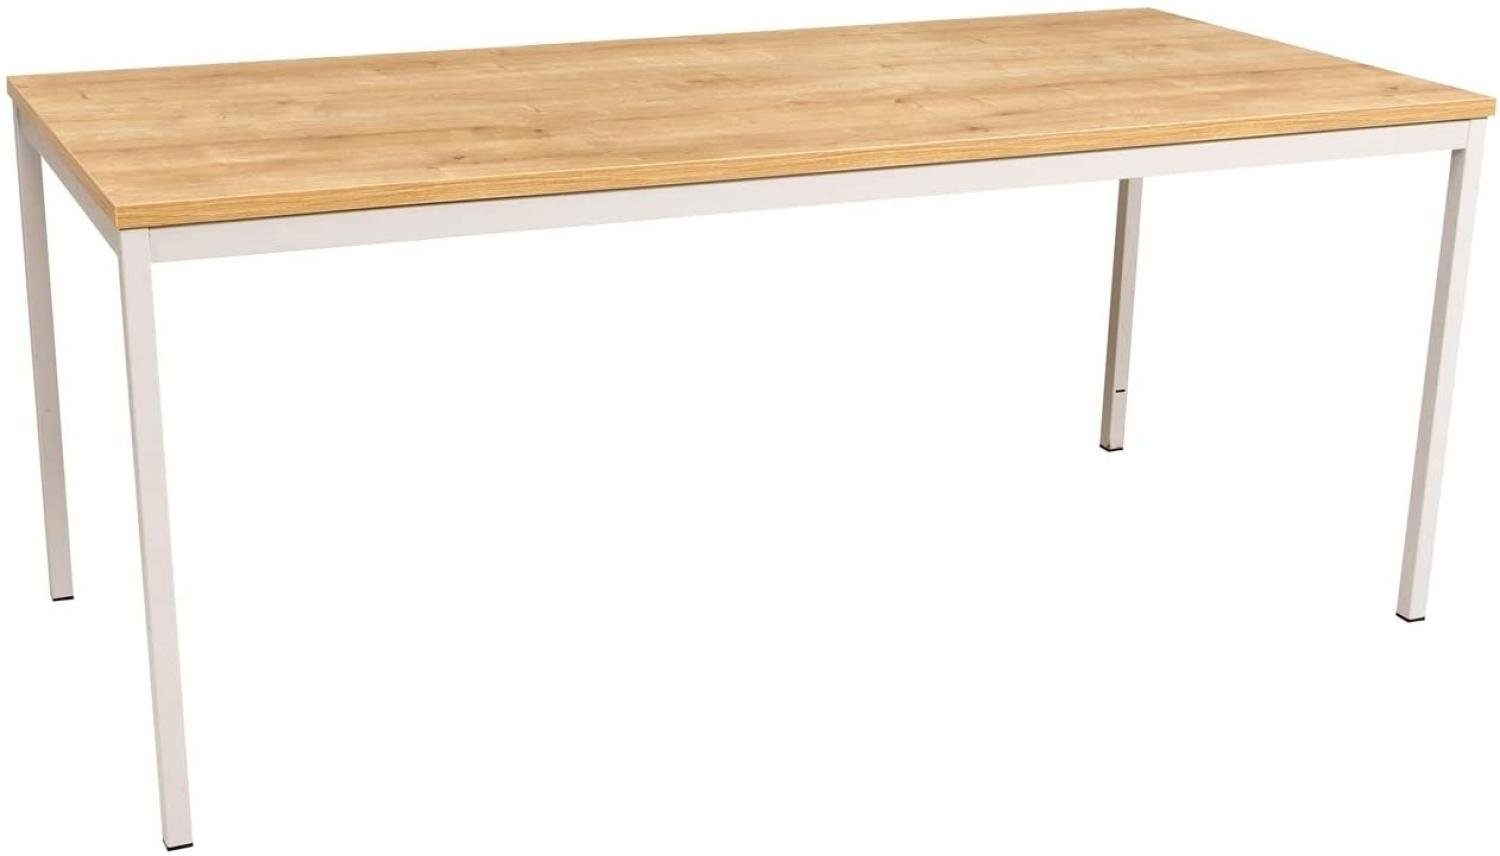 Furni24 Rechteckiger Universaltisch mit laminierter Platte Eiche 200x80x75 cm, Metallgestell und niveauausgleichs Füßen, ideal im Homeoffice als Schreibtisch, Konferenztisch, Computertisch, Esstisch Bild 1